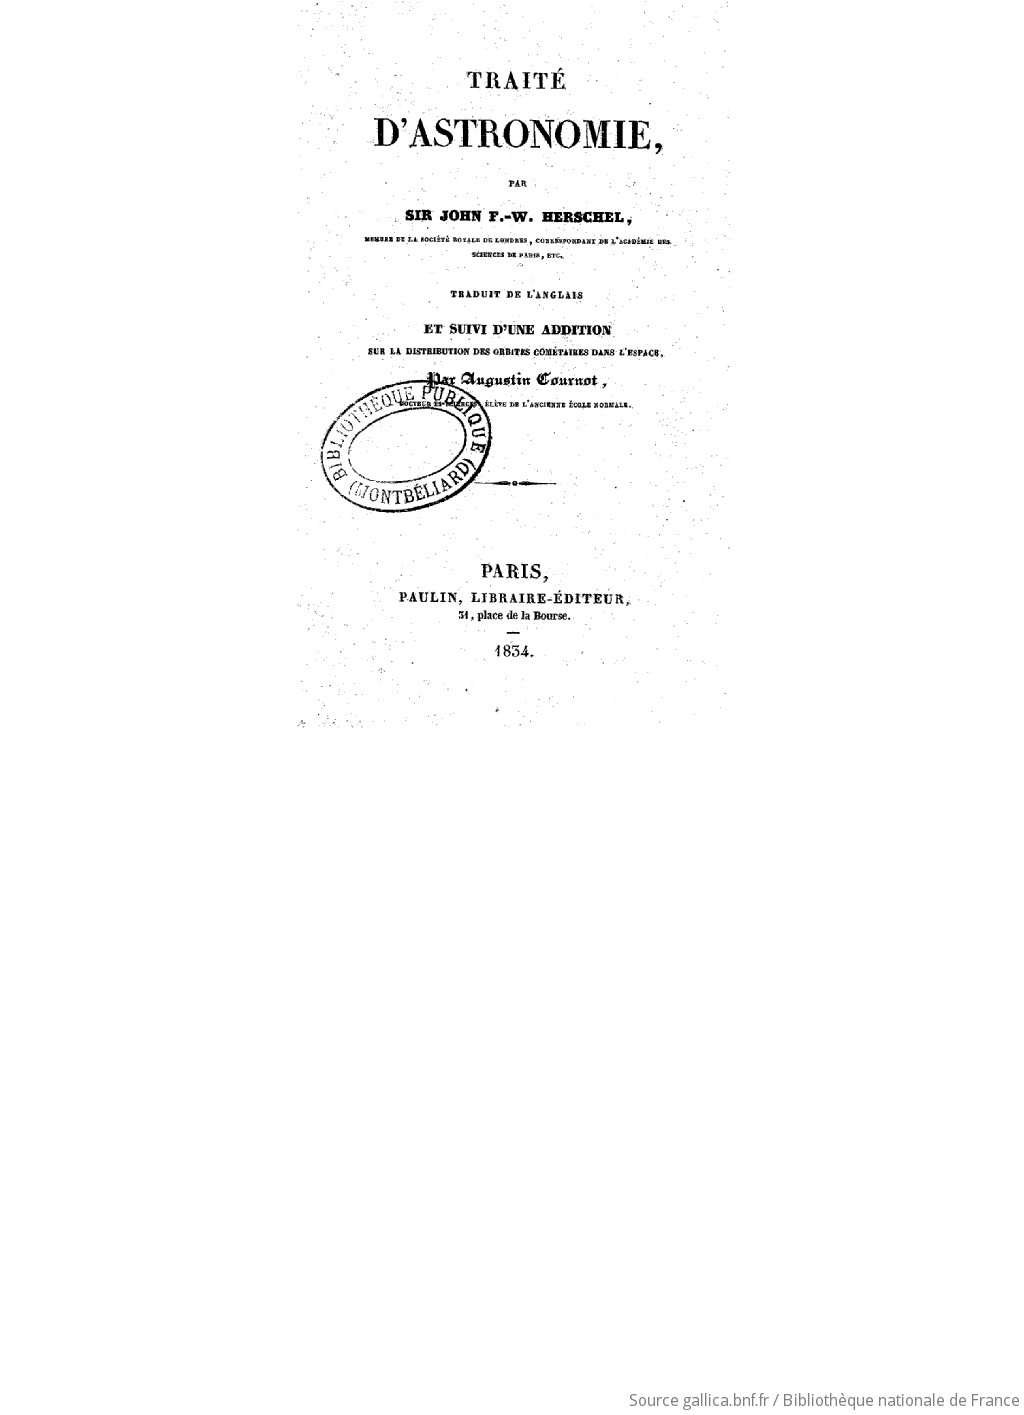 Traité d'astronomie / par Sir John F.-W. Herschel,... ; trad. de l'anglais [par Augustin Cournot]. et suivi d'une Addition sur la distribution des orbites cométaires dans l'espace / par Augustin Cournot,...